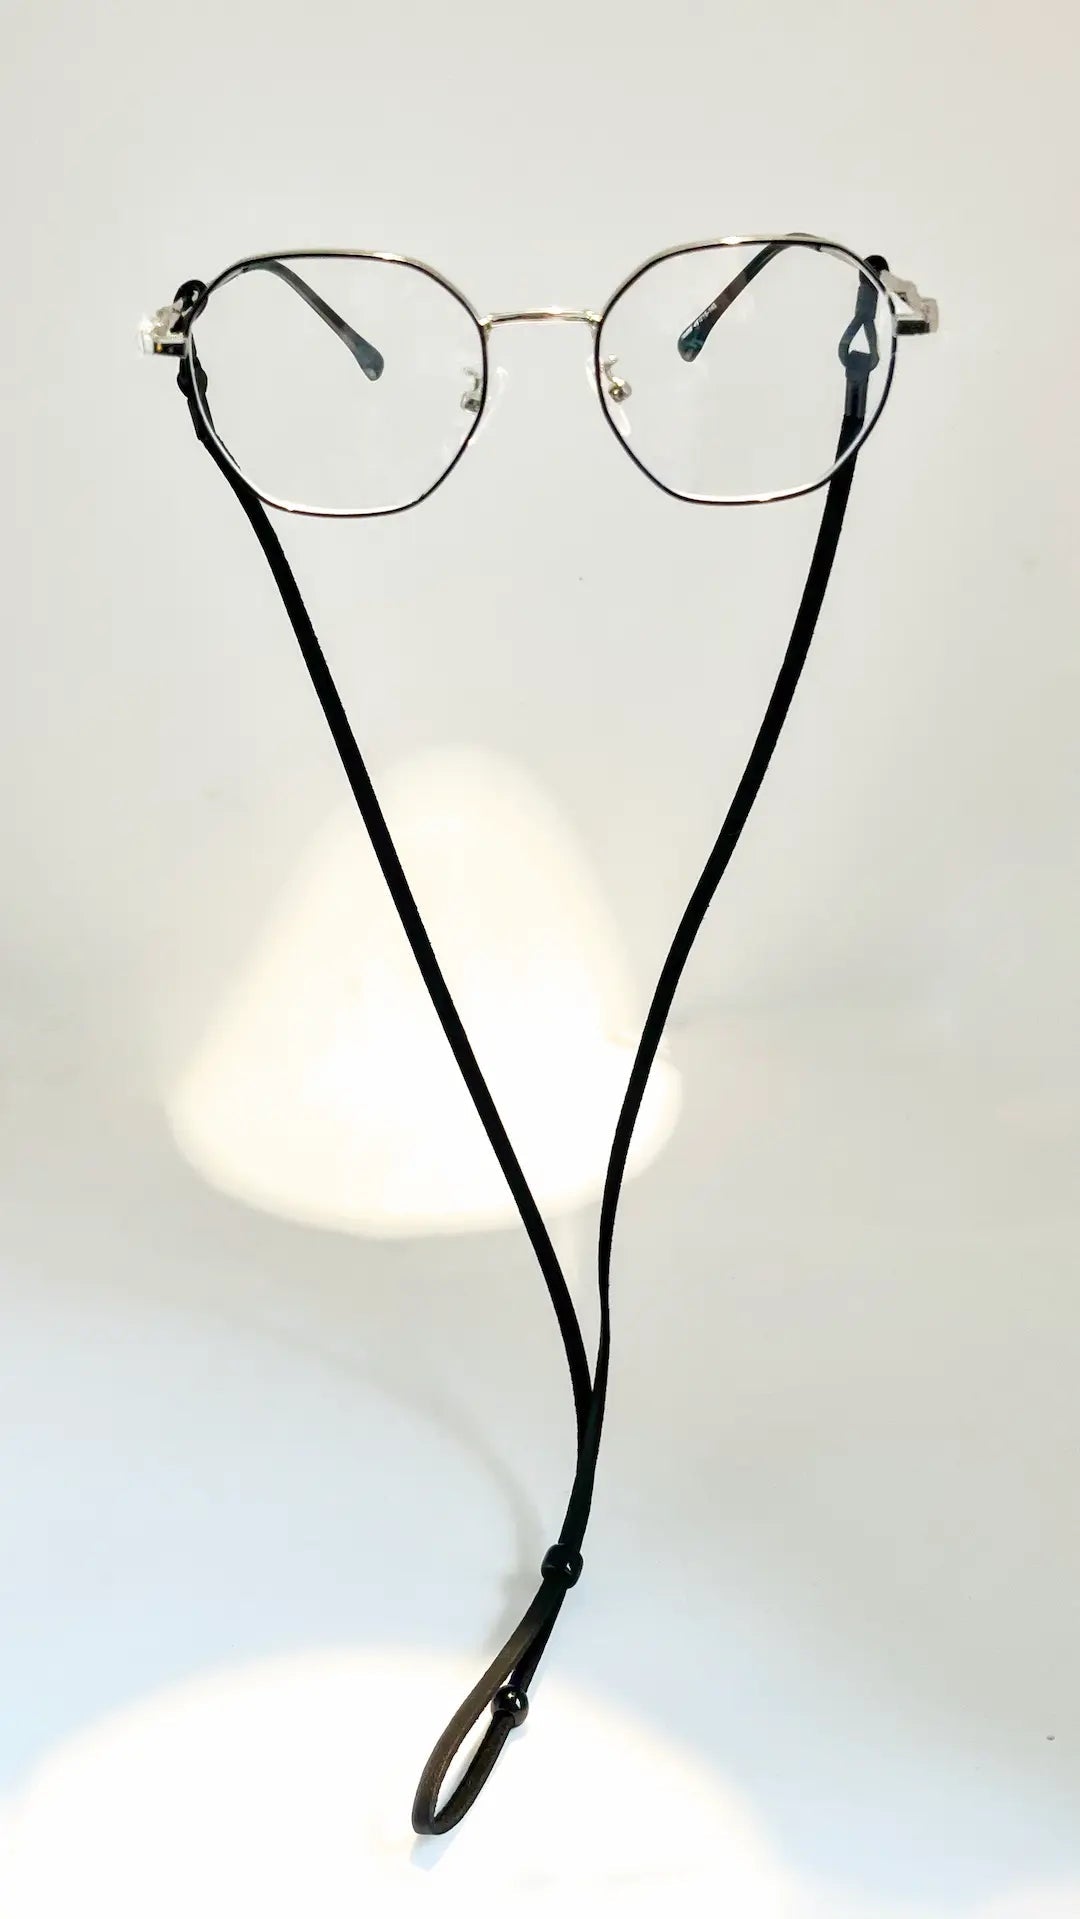 Cuelga Gafas - Optica Visión Natural